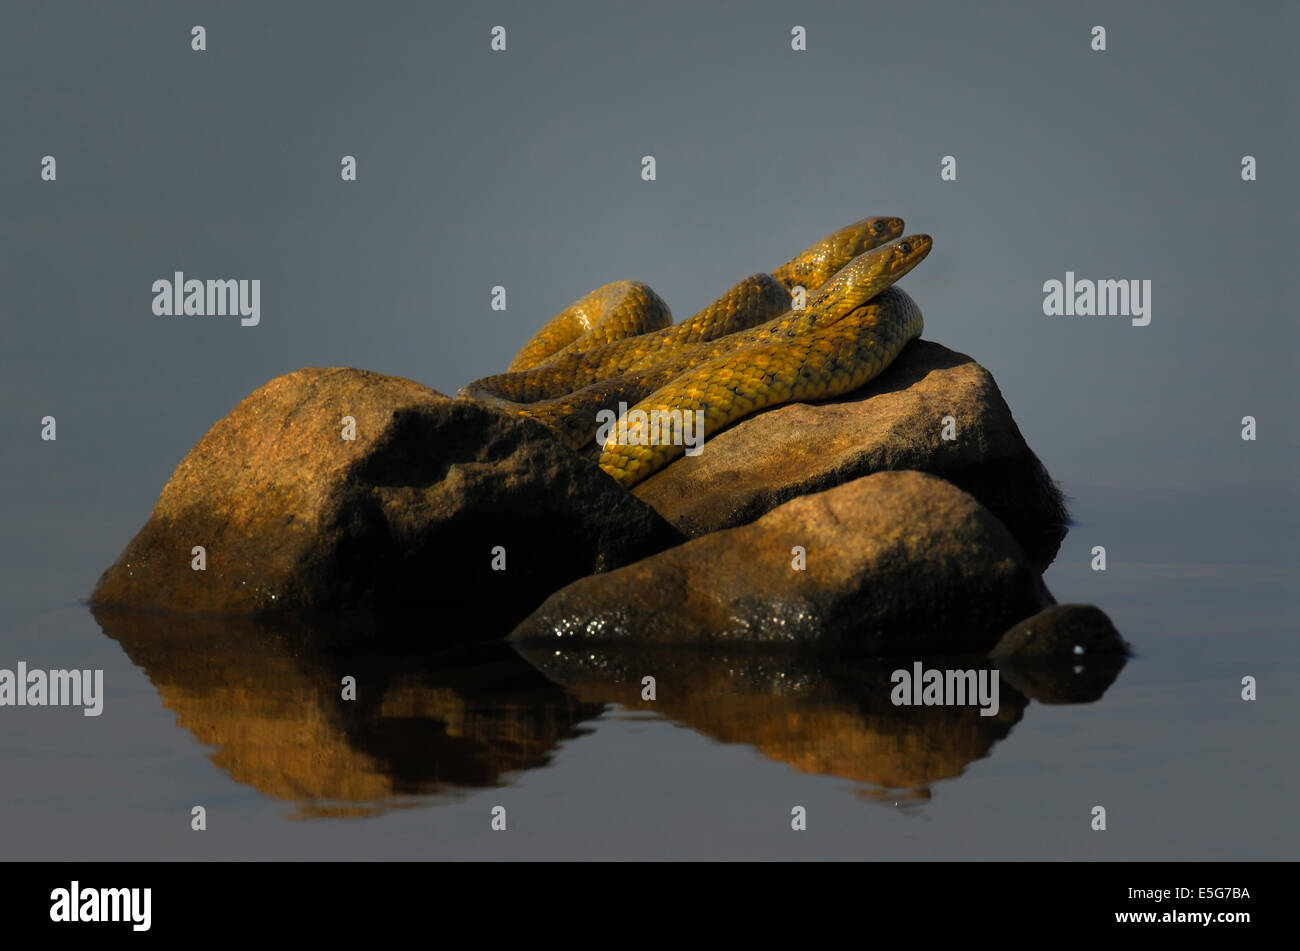 Checkered Keelback  Snakes Stock Photo